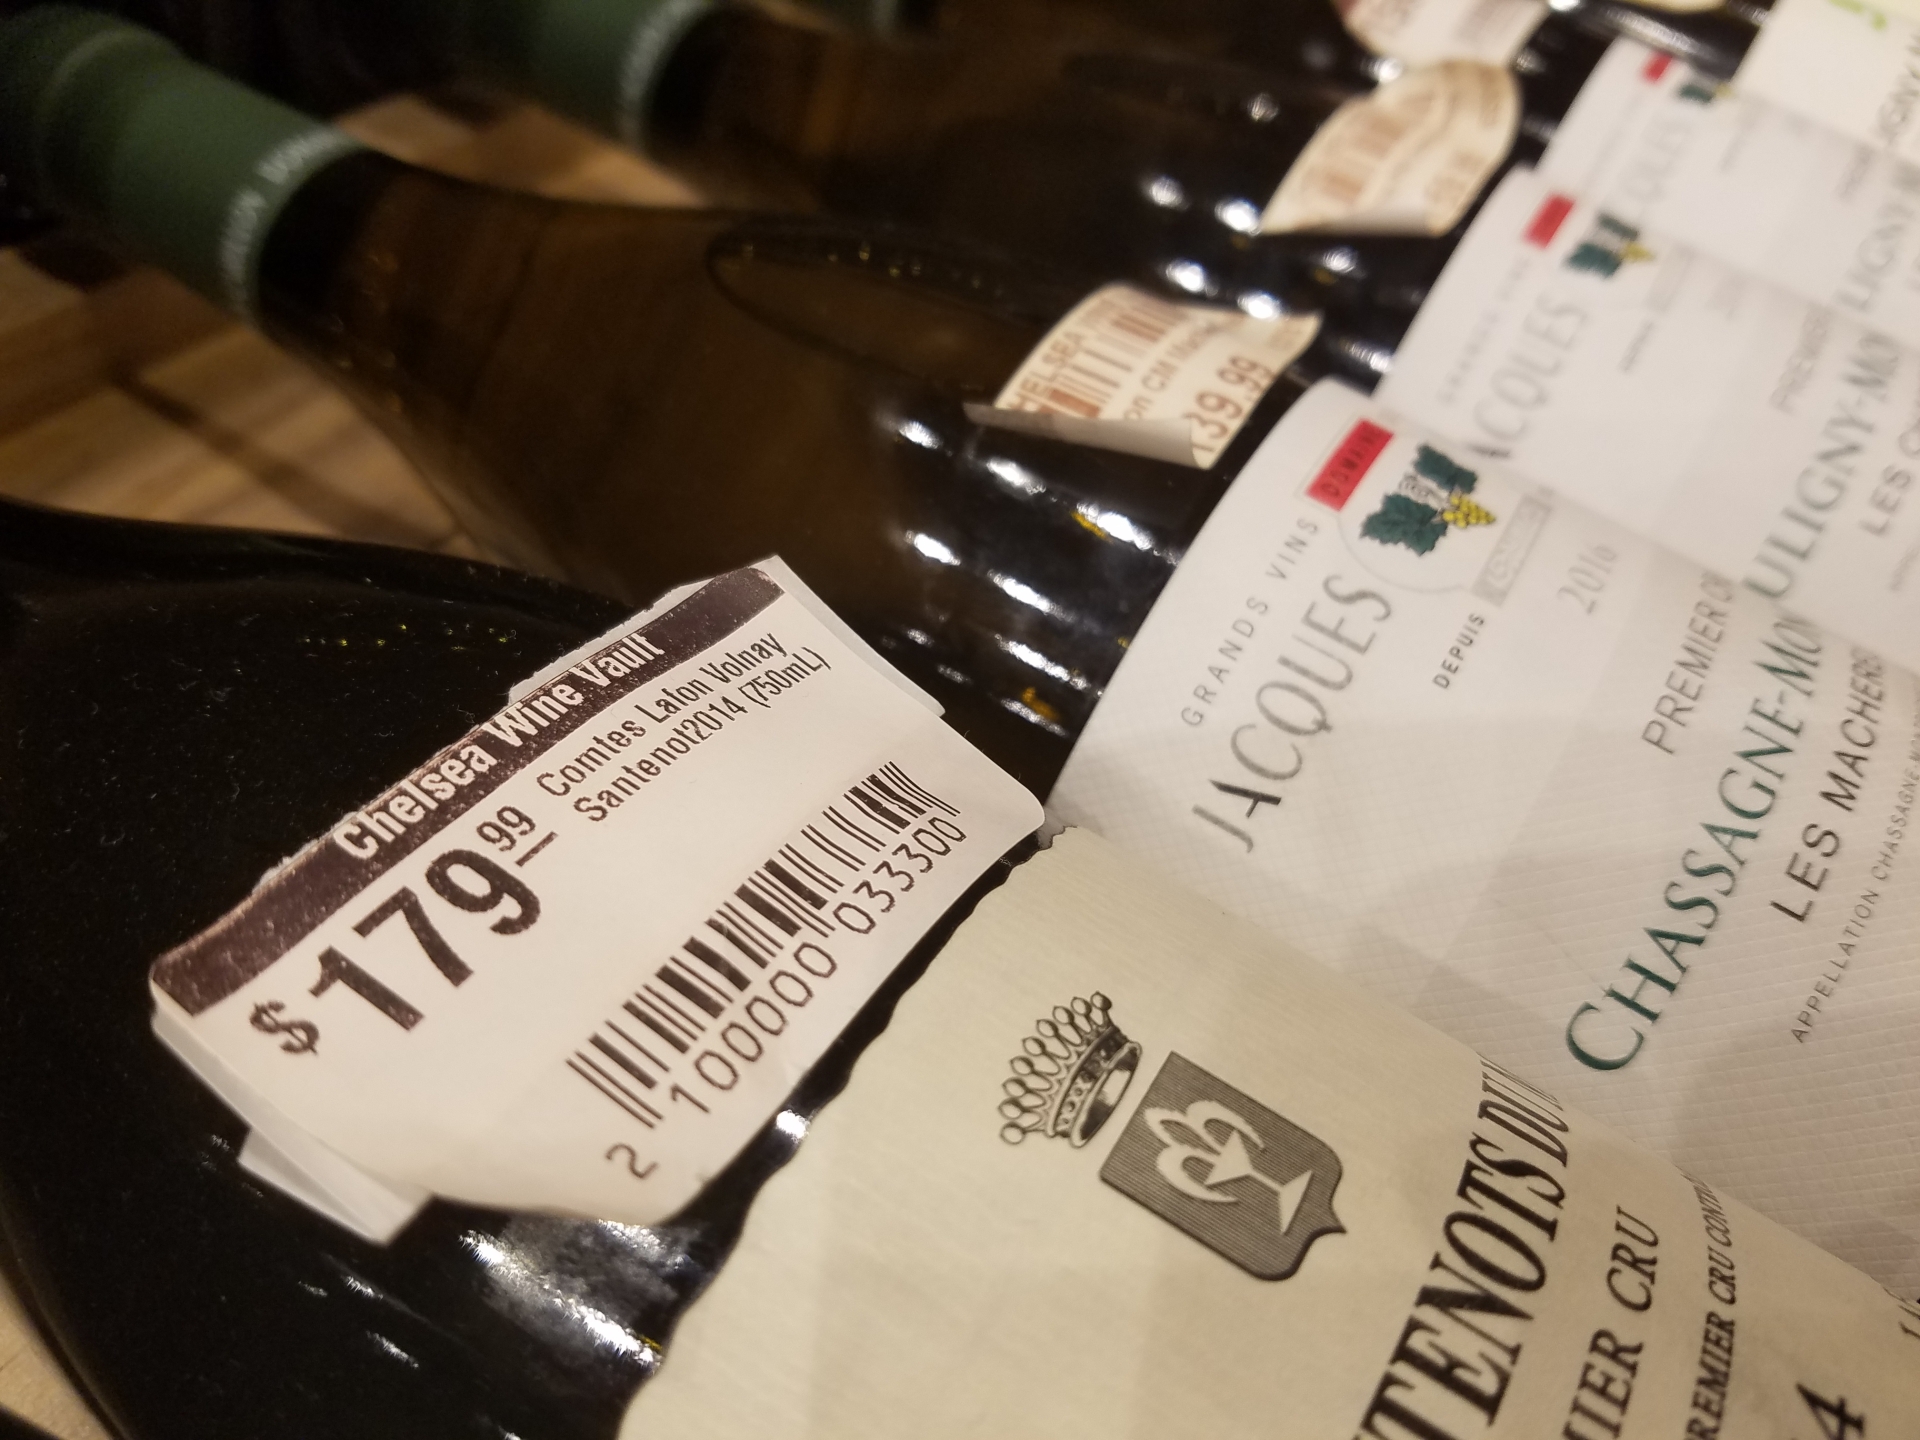 Marchés export des vins de Bourgogne : trois crises majeures encore en cours